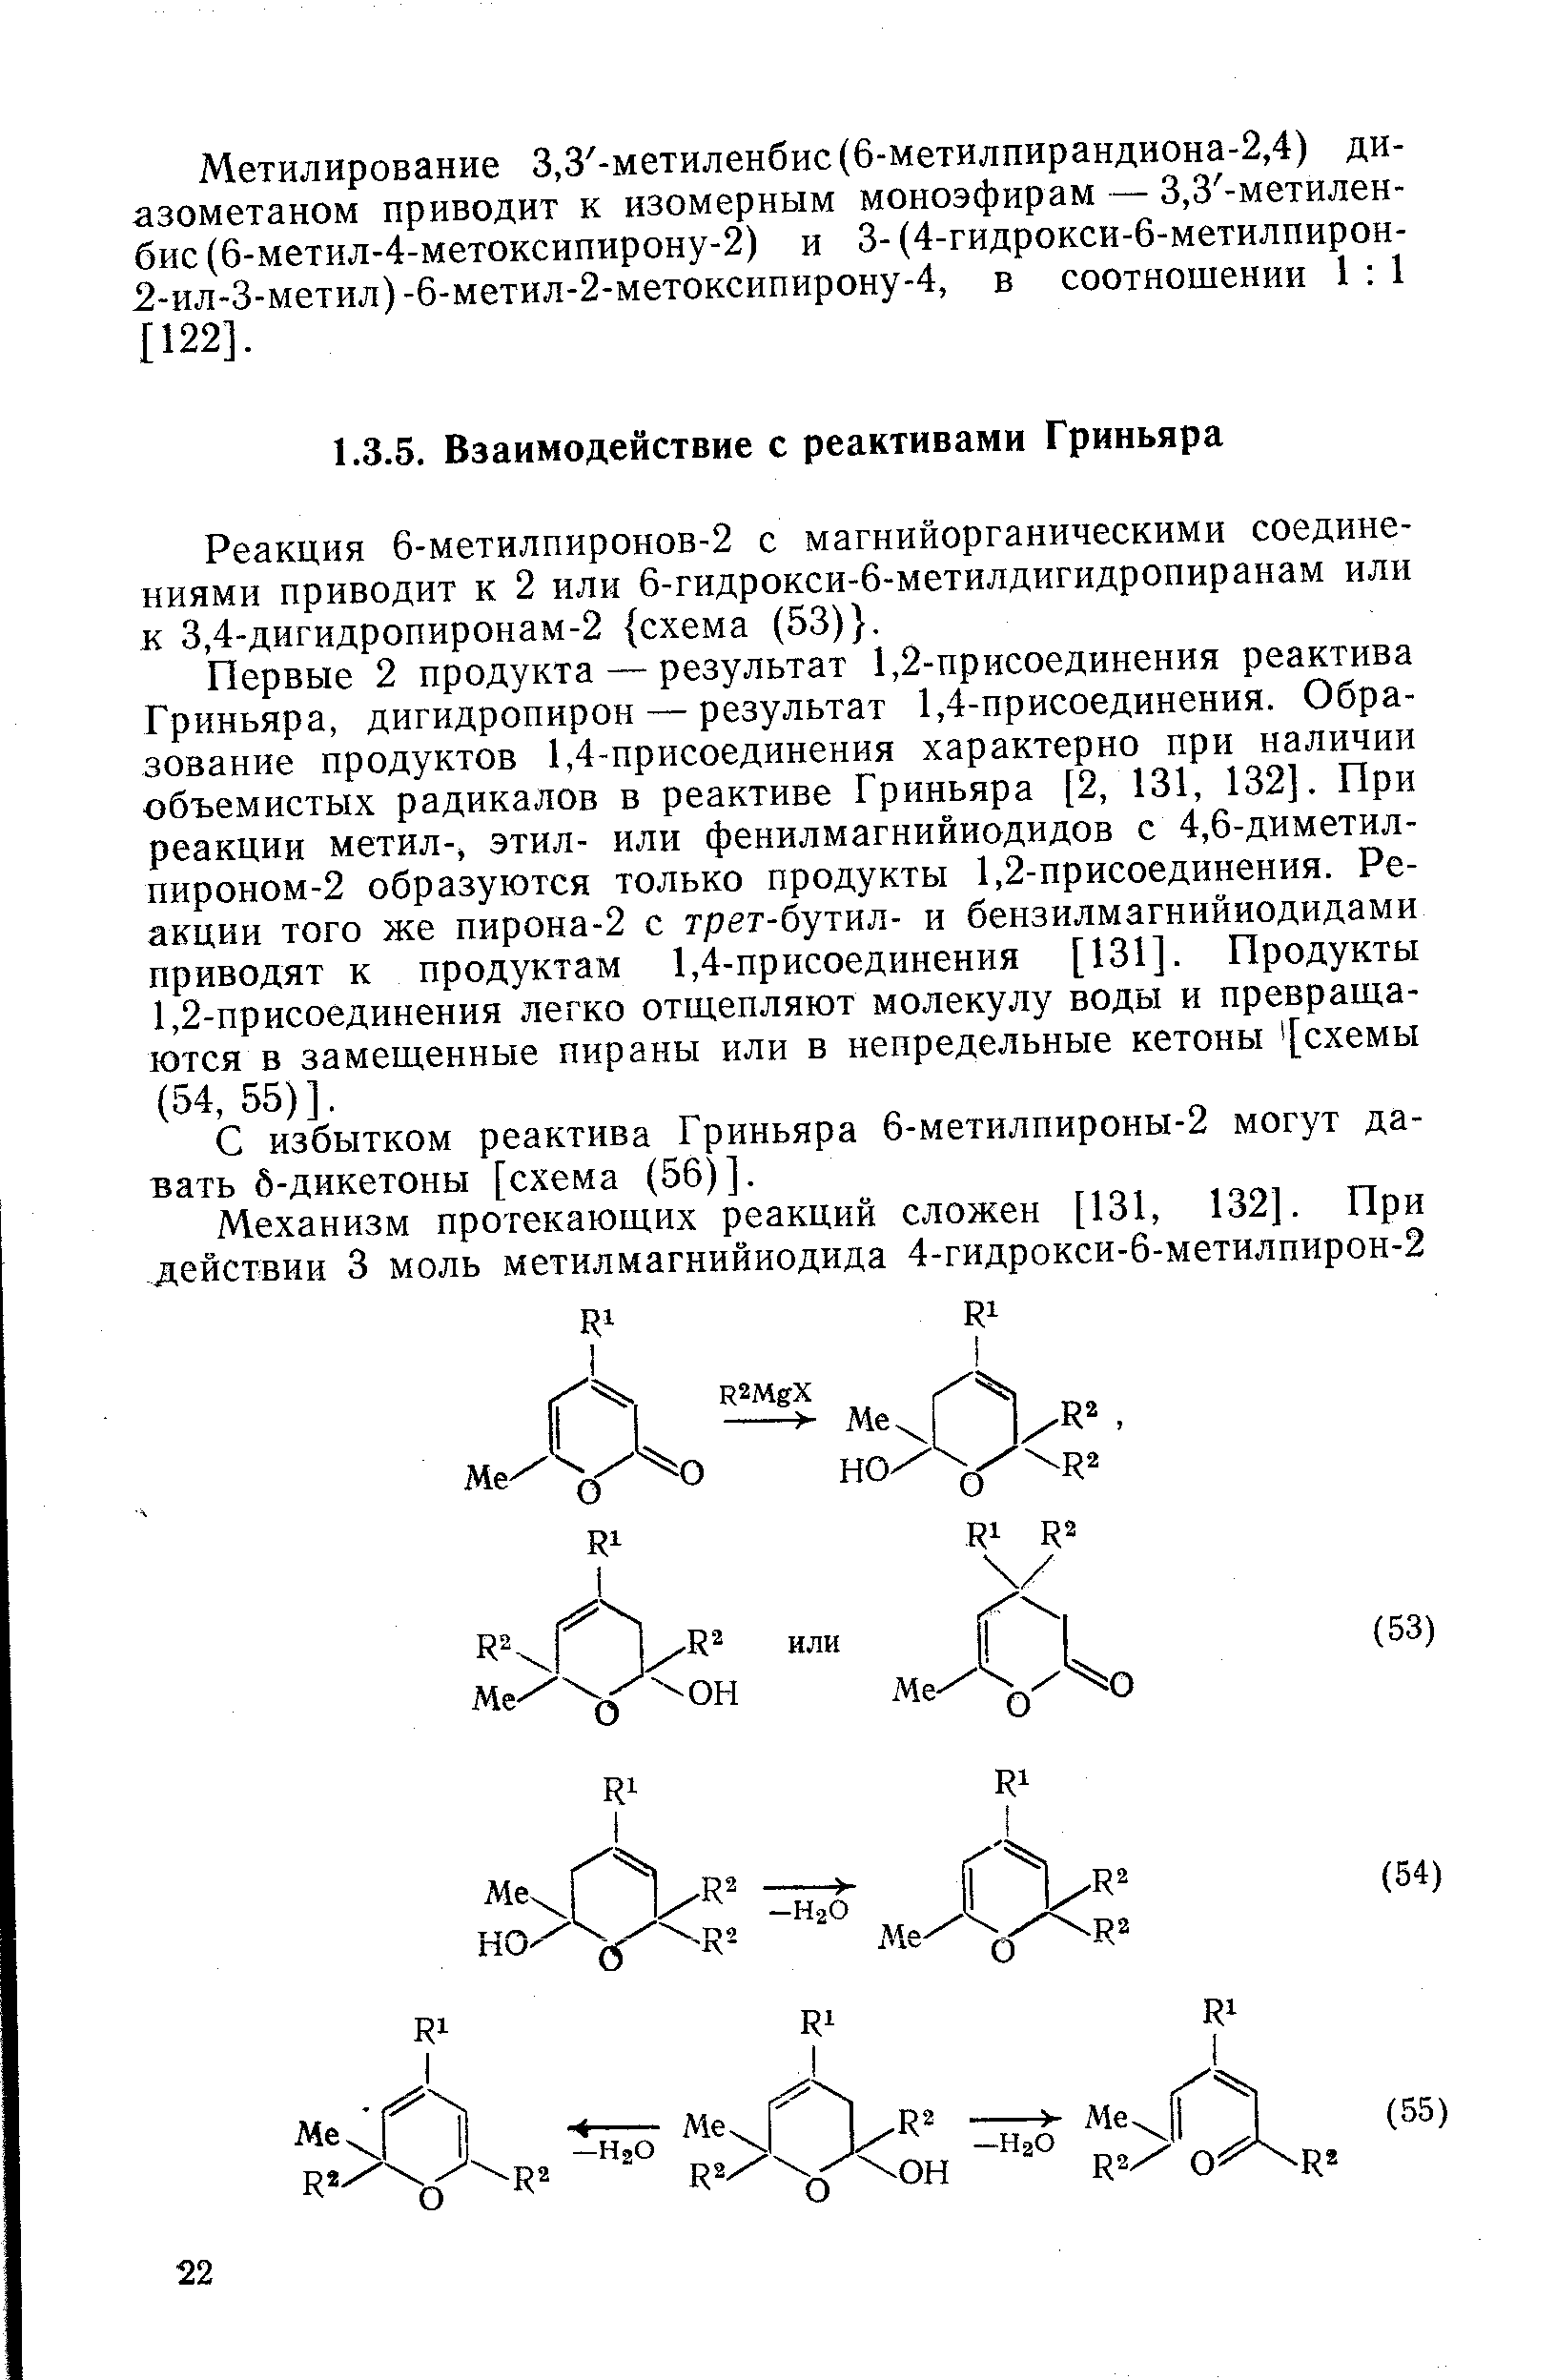 С избытком реактива Гриньяра 6-метилпироны-2 могут давать б-дикетоны [схема (56)].